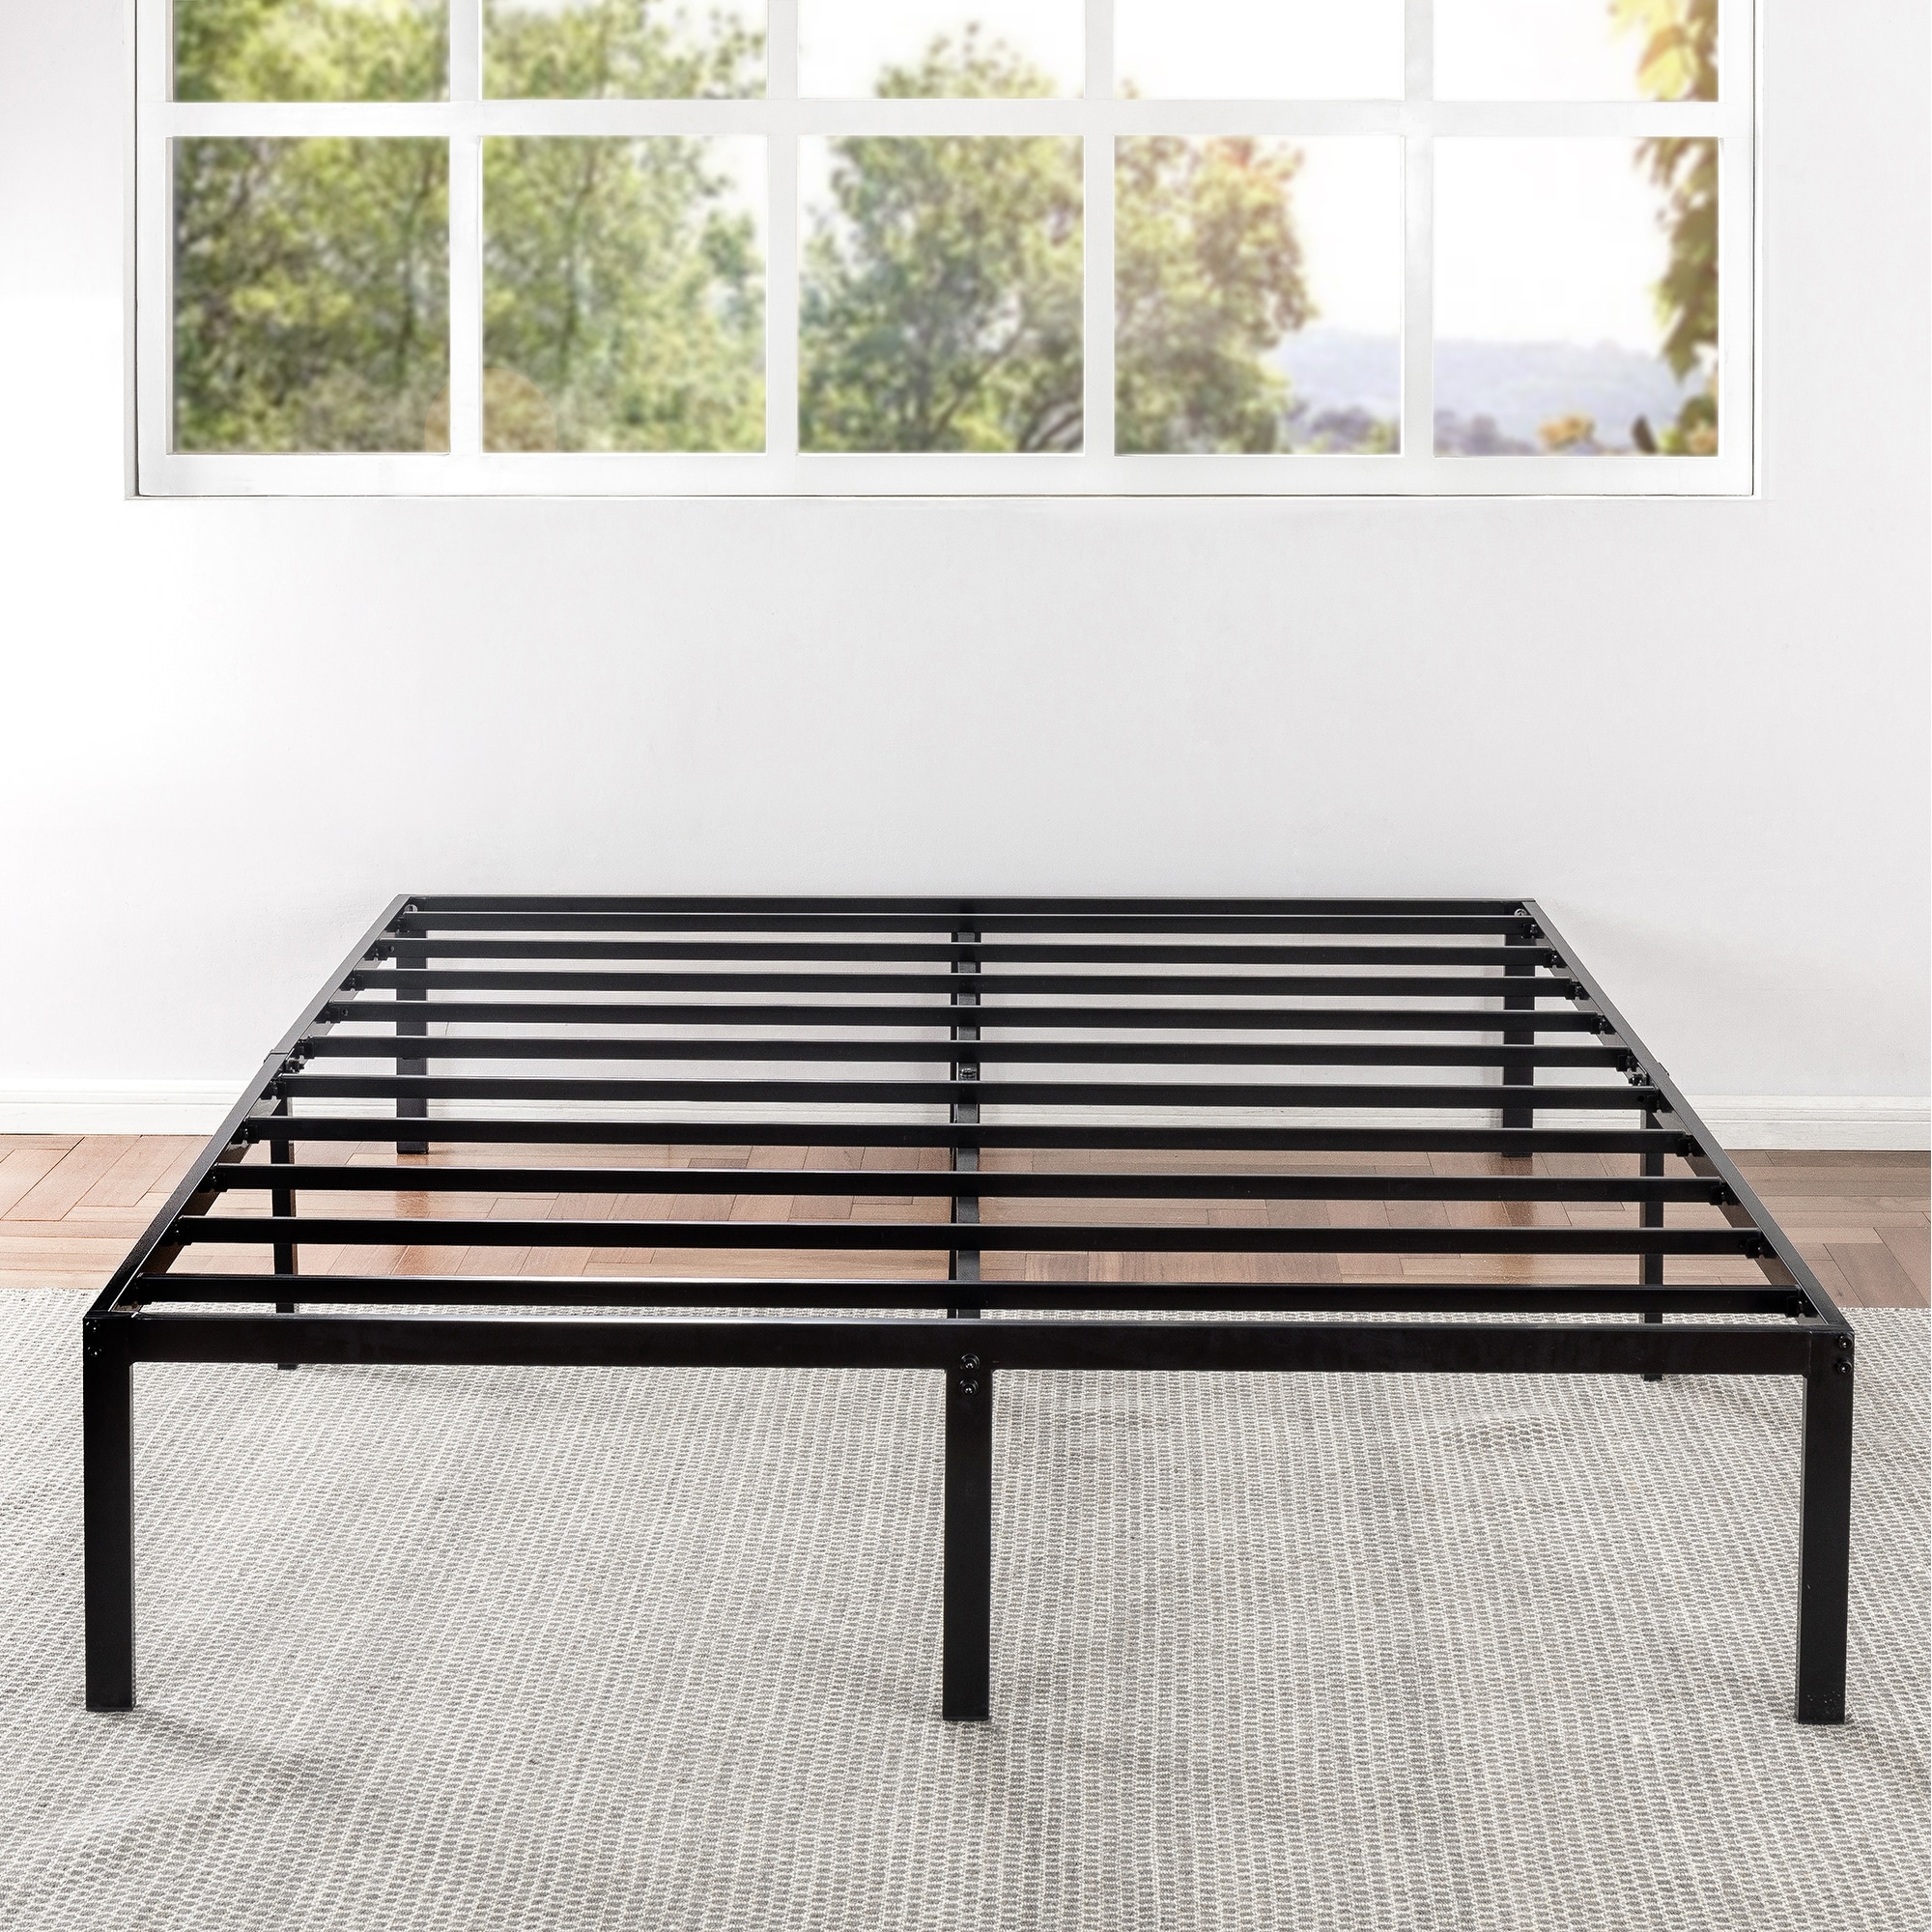 14 inch Metal Platform Bed Frame   Overstock   21474534